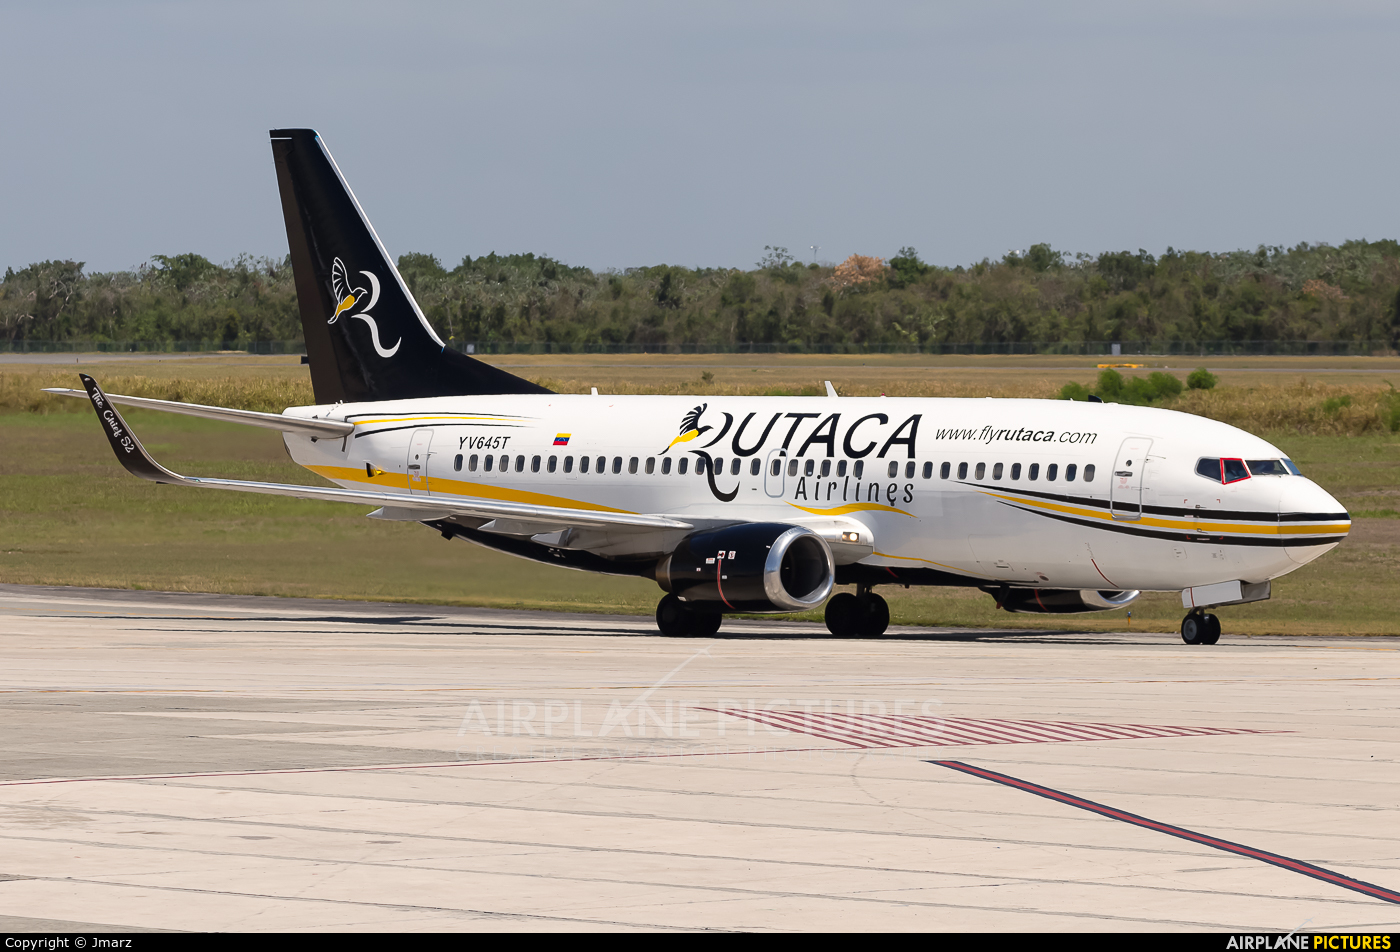 Rutaca Airlines YV645T aircraft at Santo Domingo - Aeropuerto de las Americas